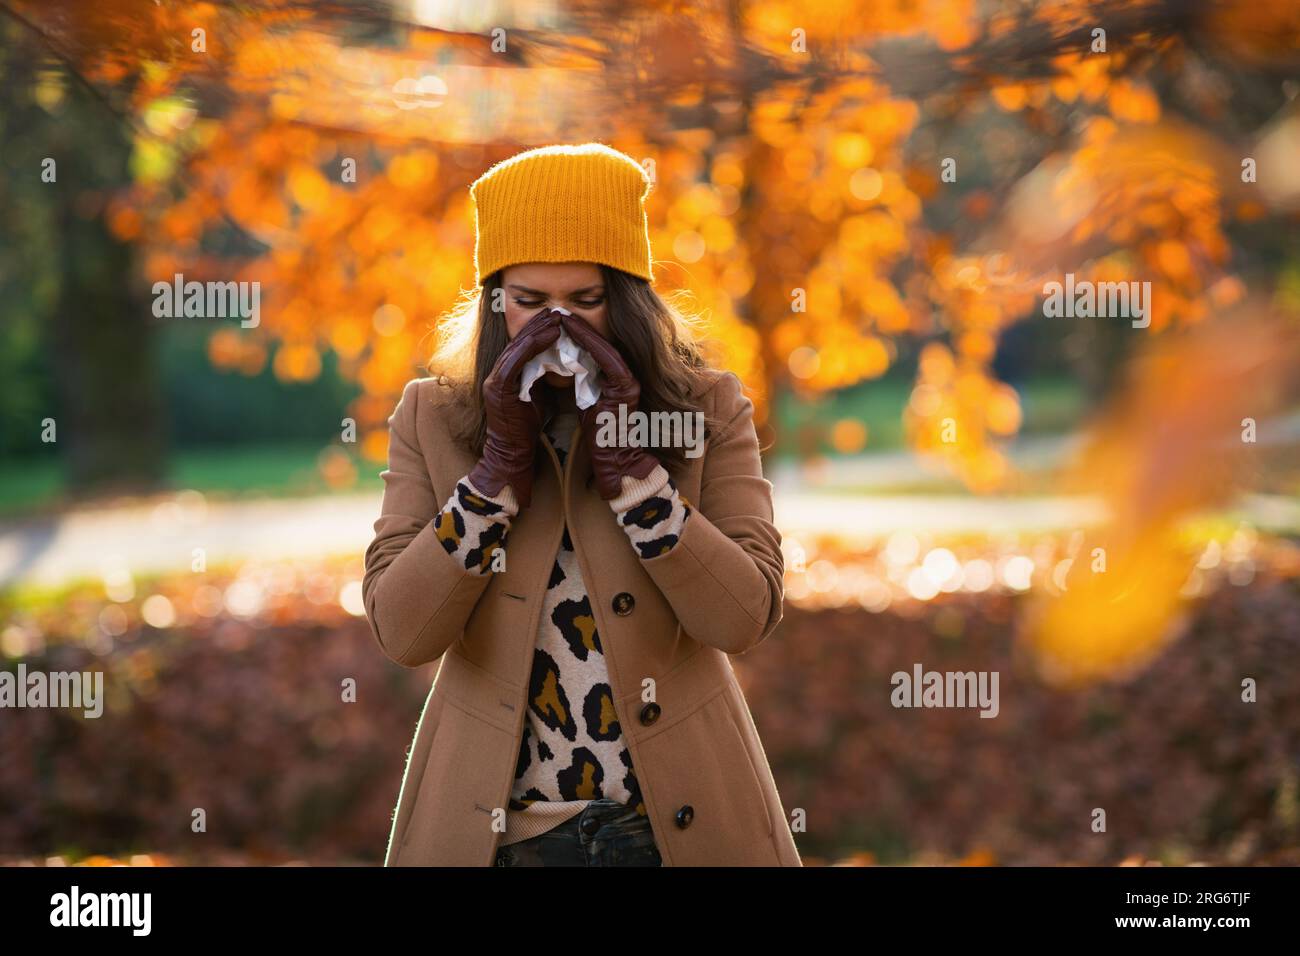 Ciao, september. elegante donna di mezza età con cappotto beige e cappello arancione con tovagliolo che soffia il naso all'esterno nel parco cittadino in autunno. Foto Stock